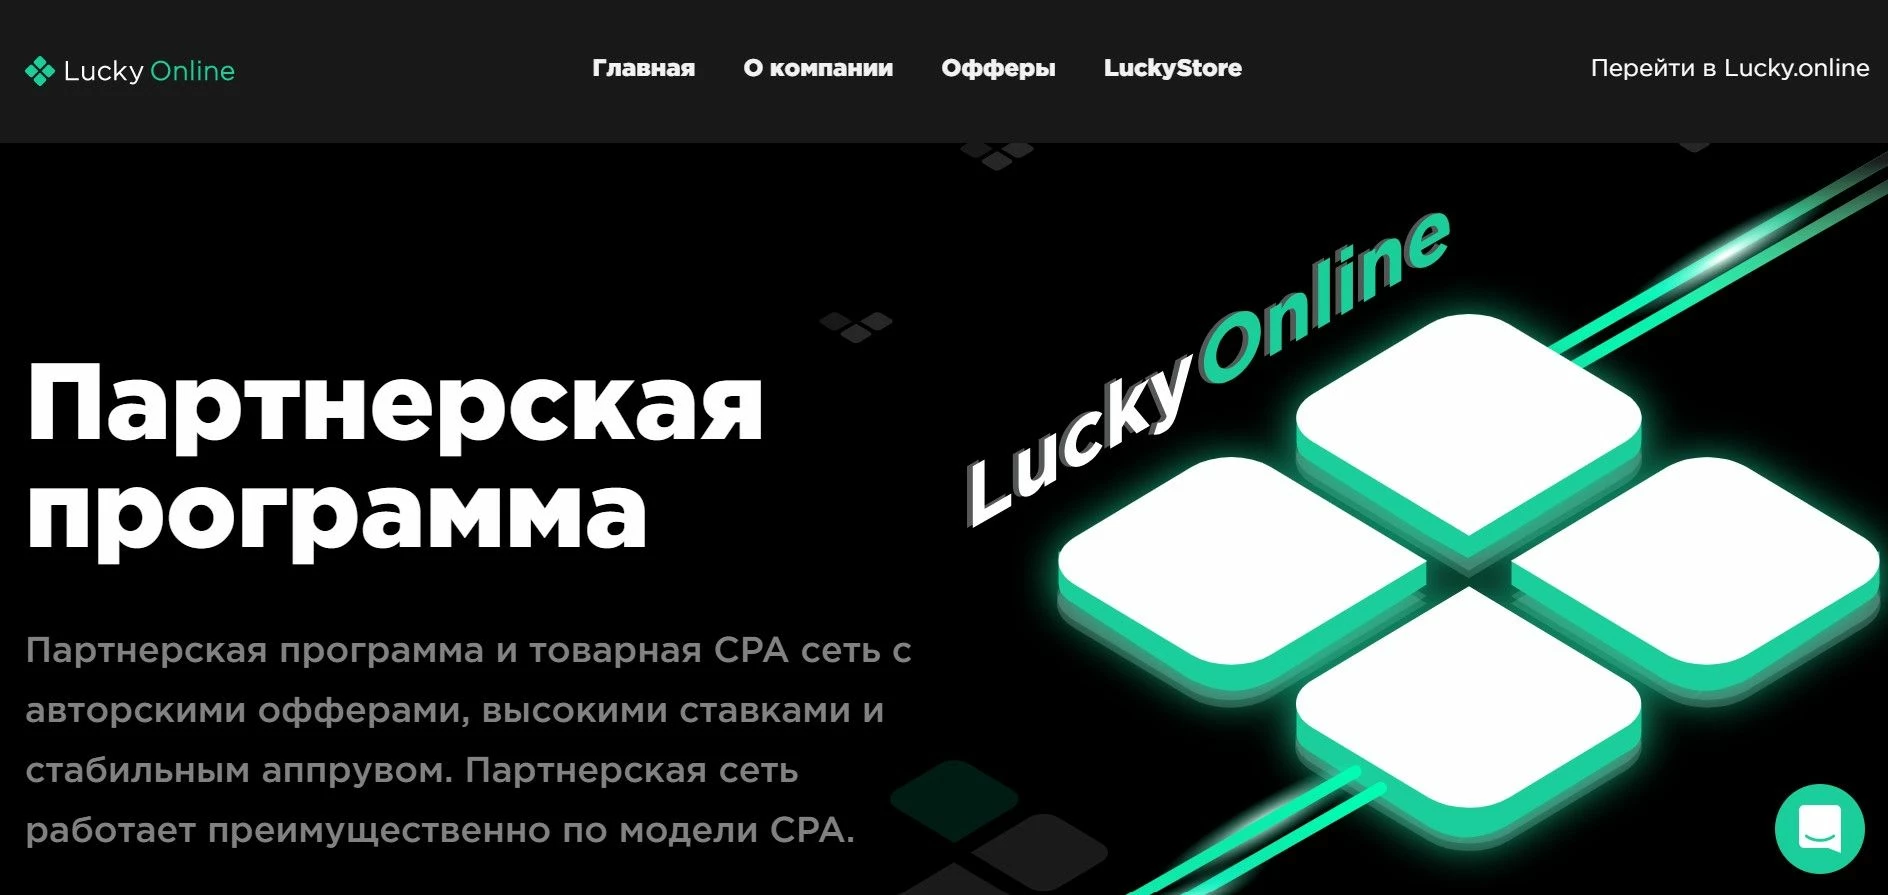 Lucky online